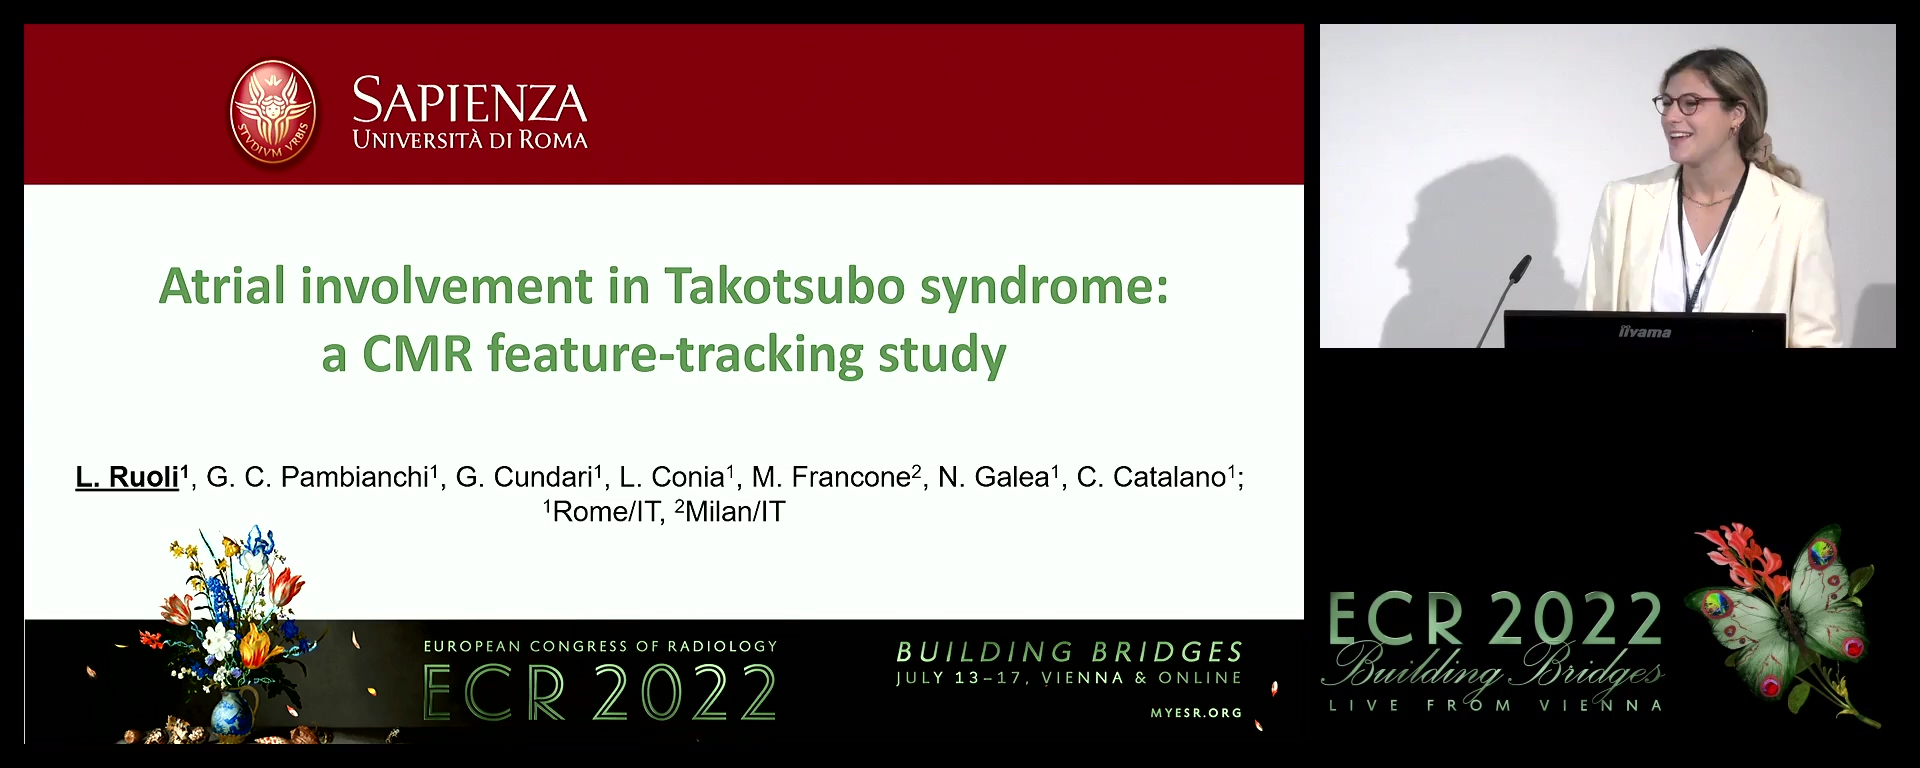 Atrial involvement in Takotsubo syndrome: a CMR feature-tracking study - Letizia Ruoli, Roma / IT